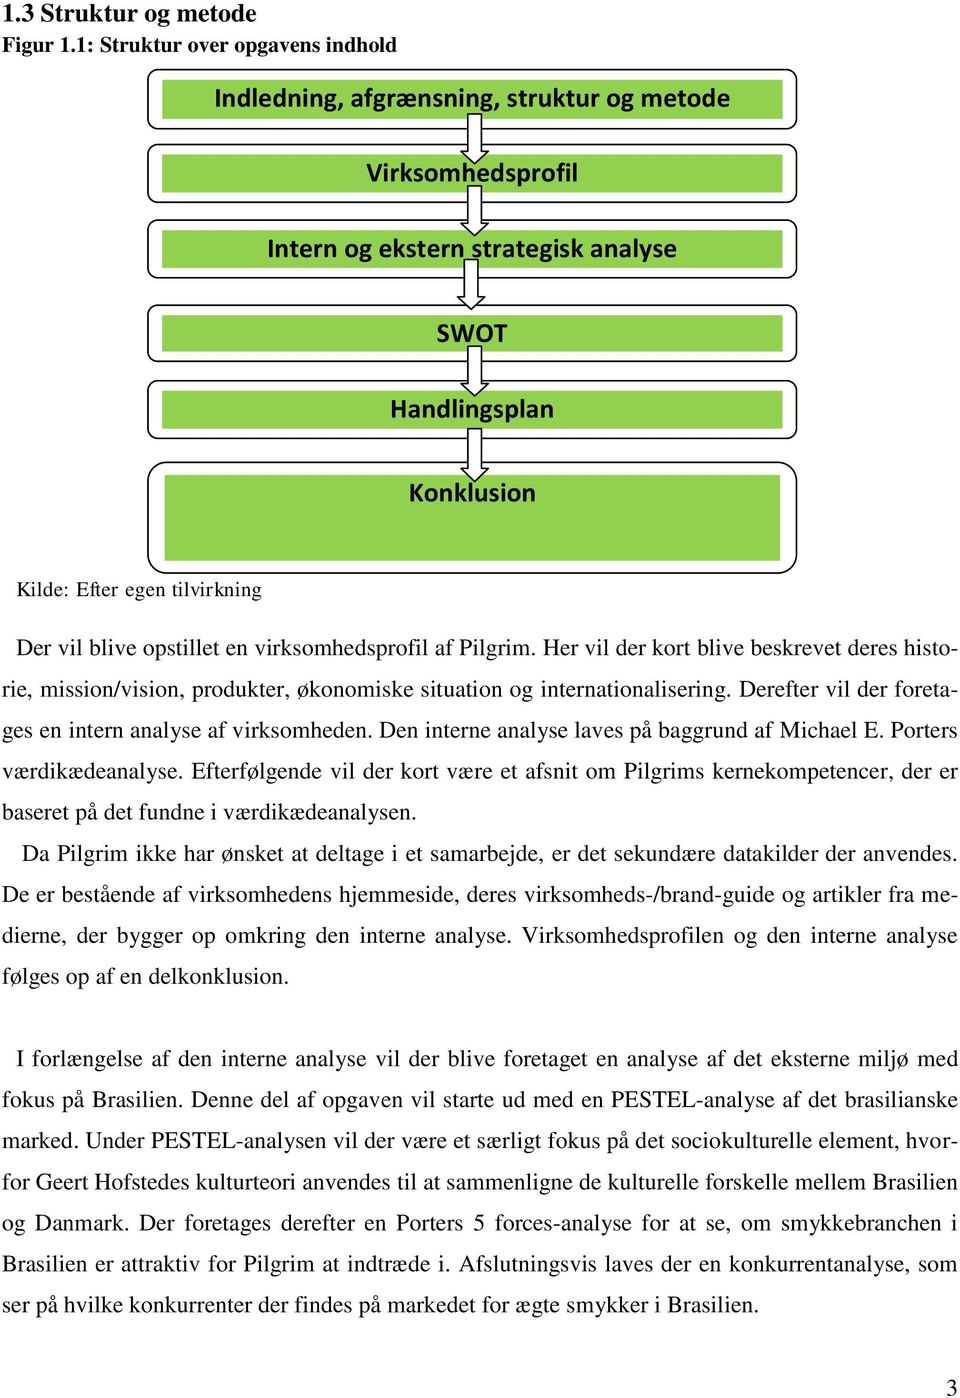 Pilgrim på det brasilianske marked - PDF Gratis download